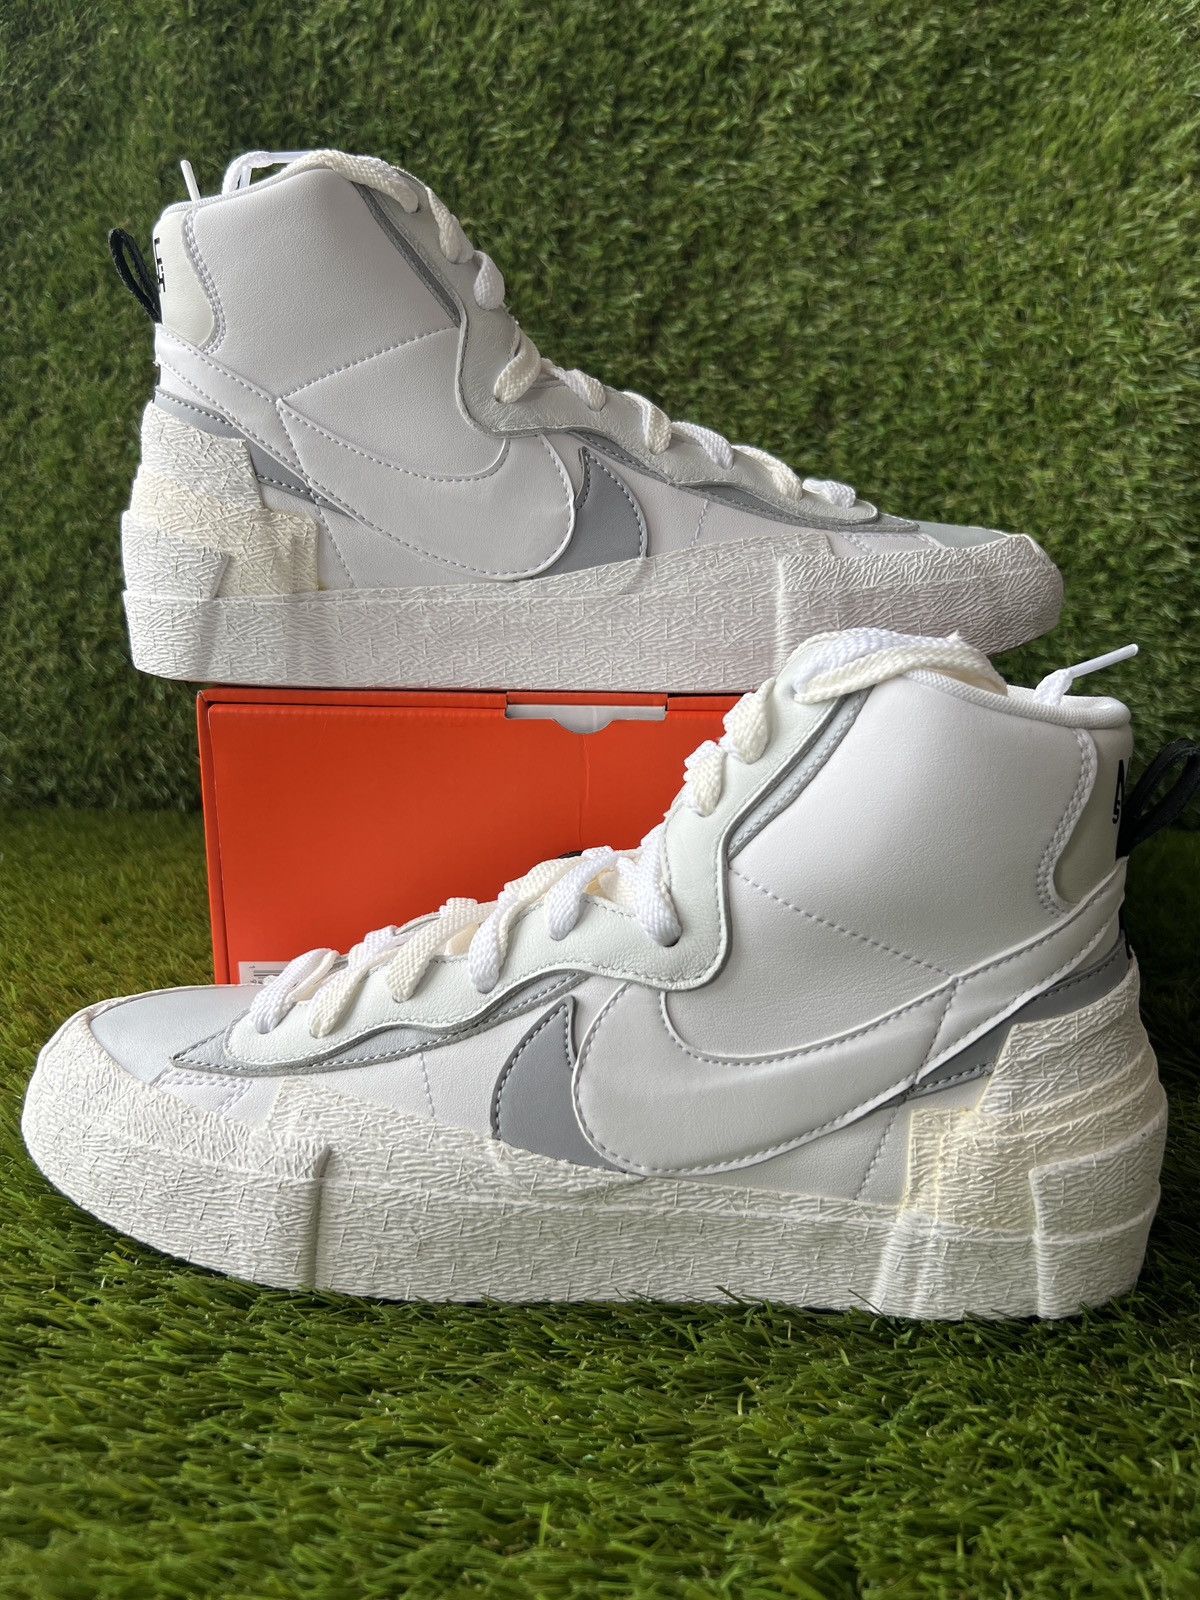 Nike Sacai Blazer Mid White Grey | Grailed